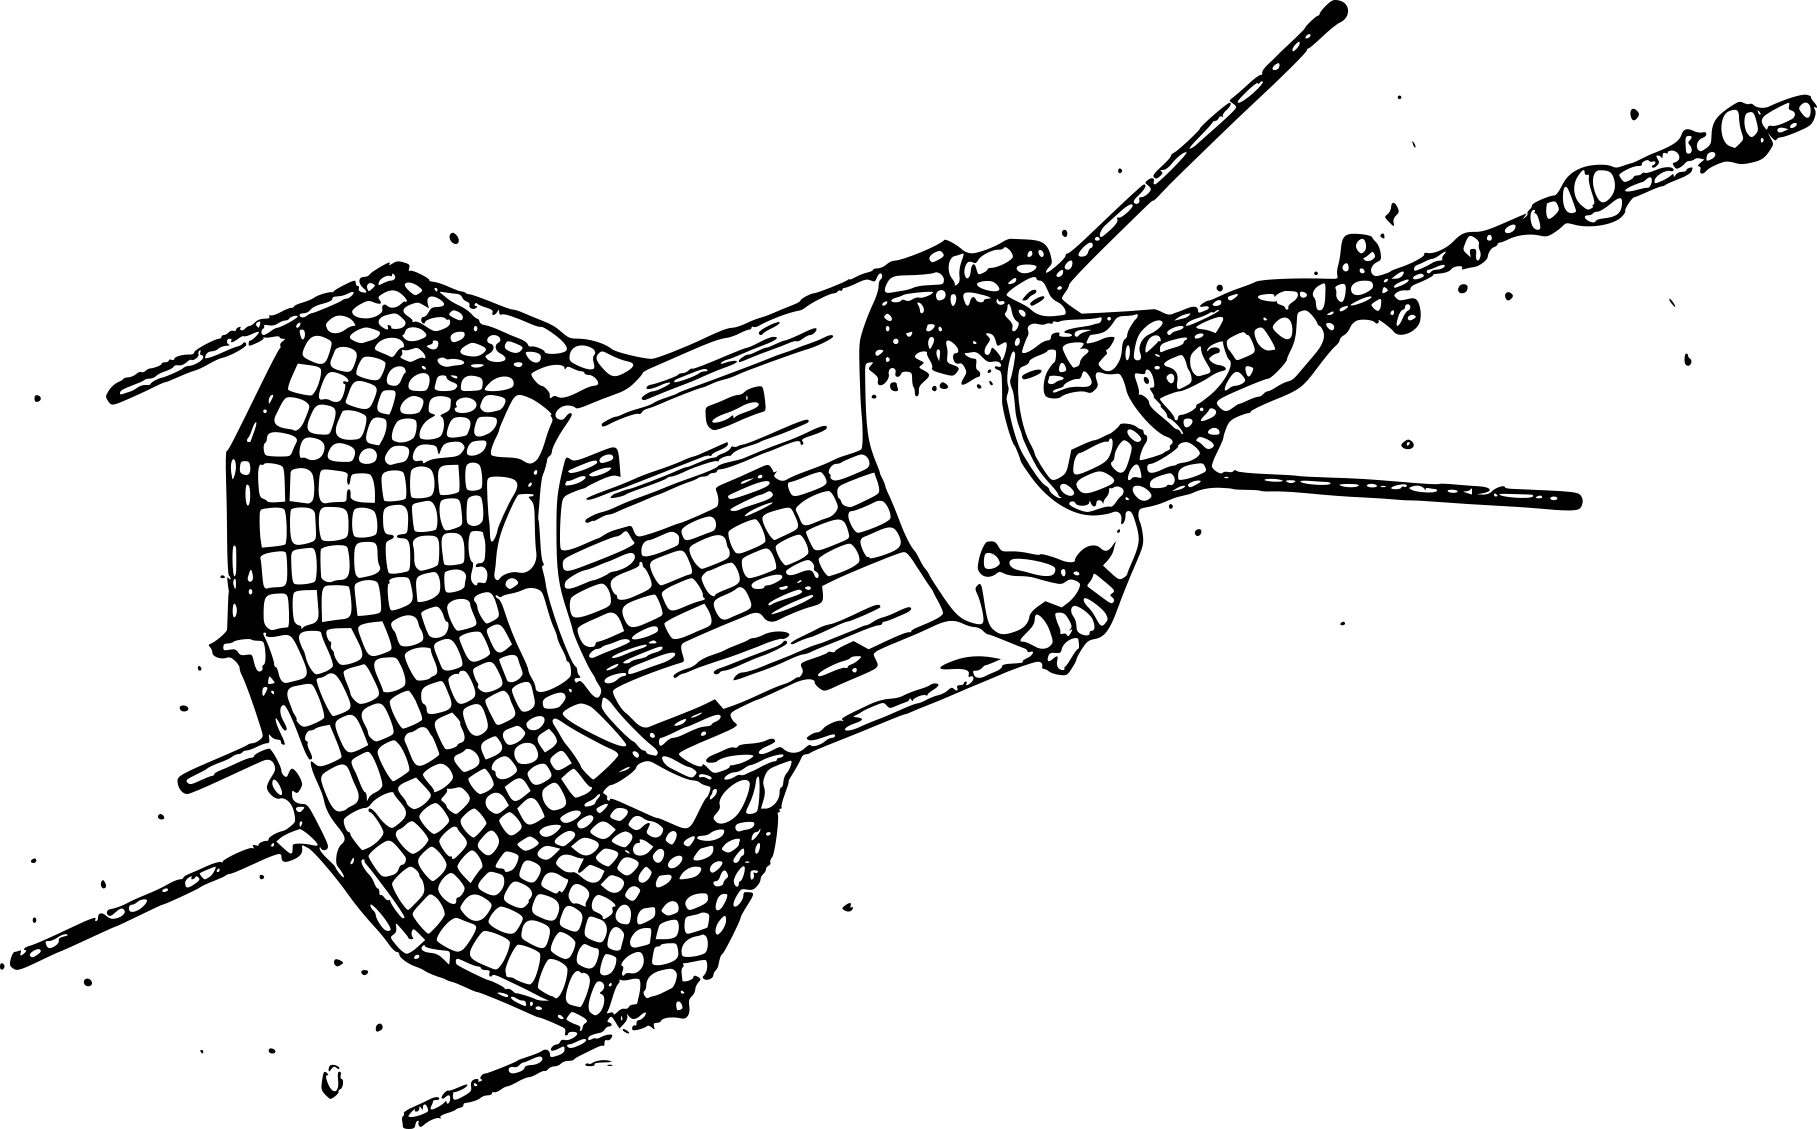 Рисунок первого спутника. Чертеж ИСЗ Спутник 1. Космический аппарат "Гео-ИК" 2. Космический аппарат "Гео-ИК" 2 чертежи. ИСЗ «Коперник».